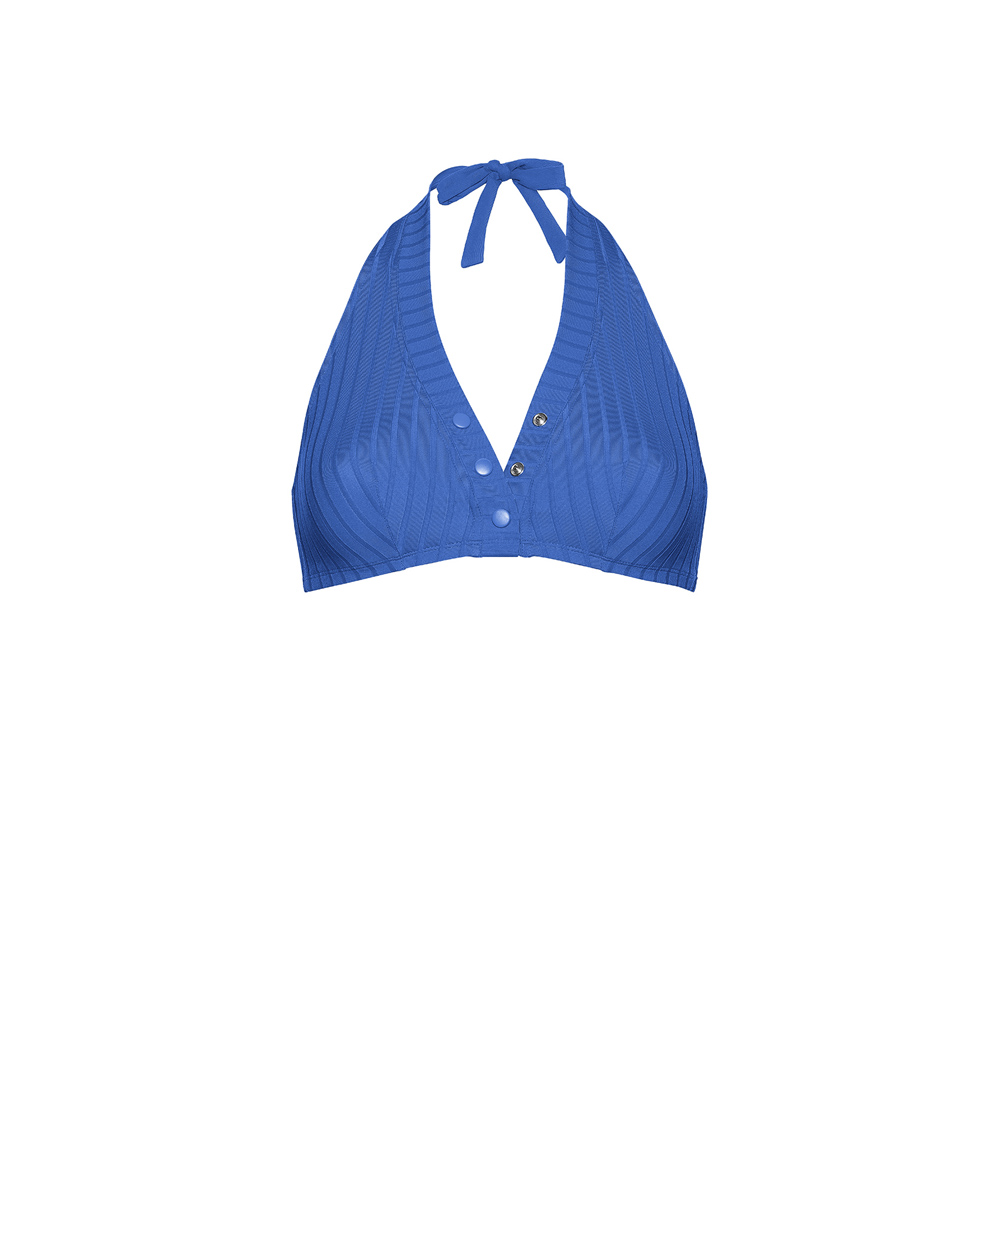 Топ купальника PISCO SOUR ERES 032311, синий цвет • Купить в интернет-магазине Kameron